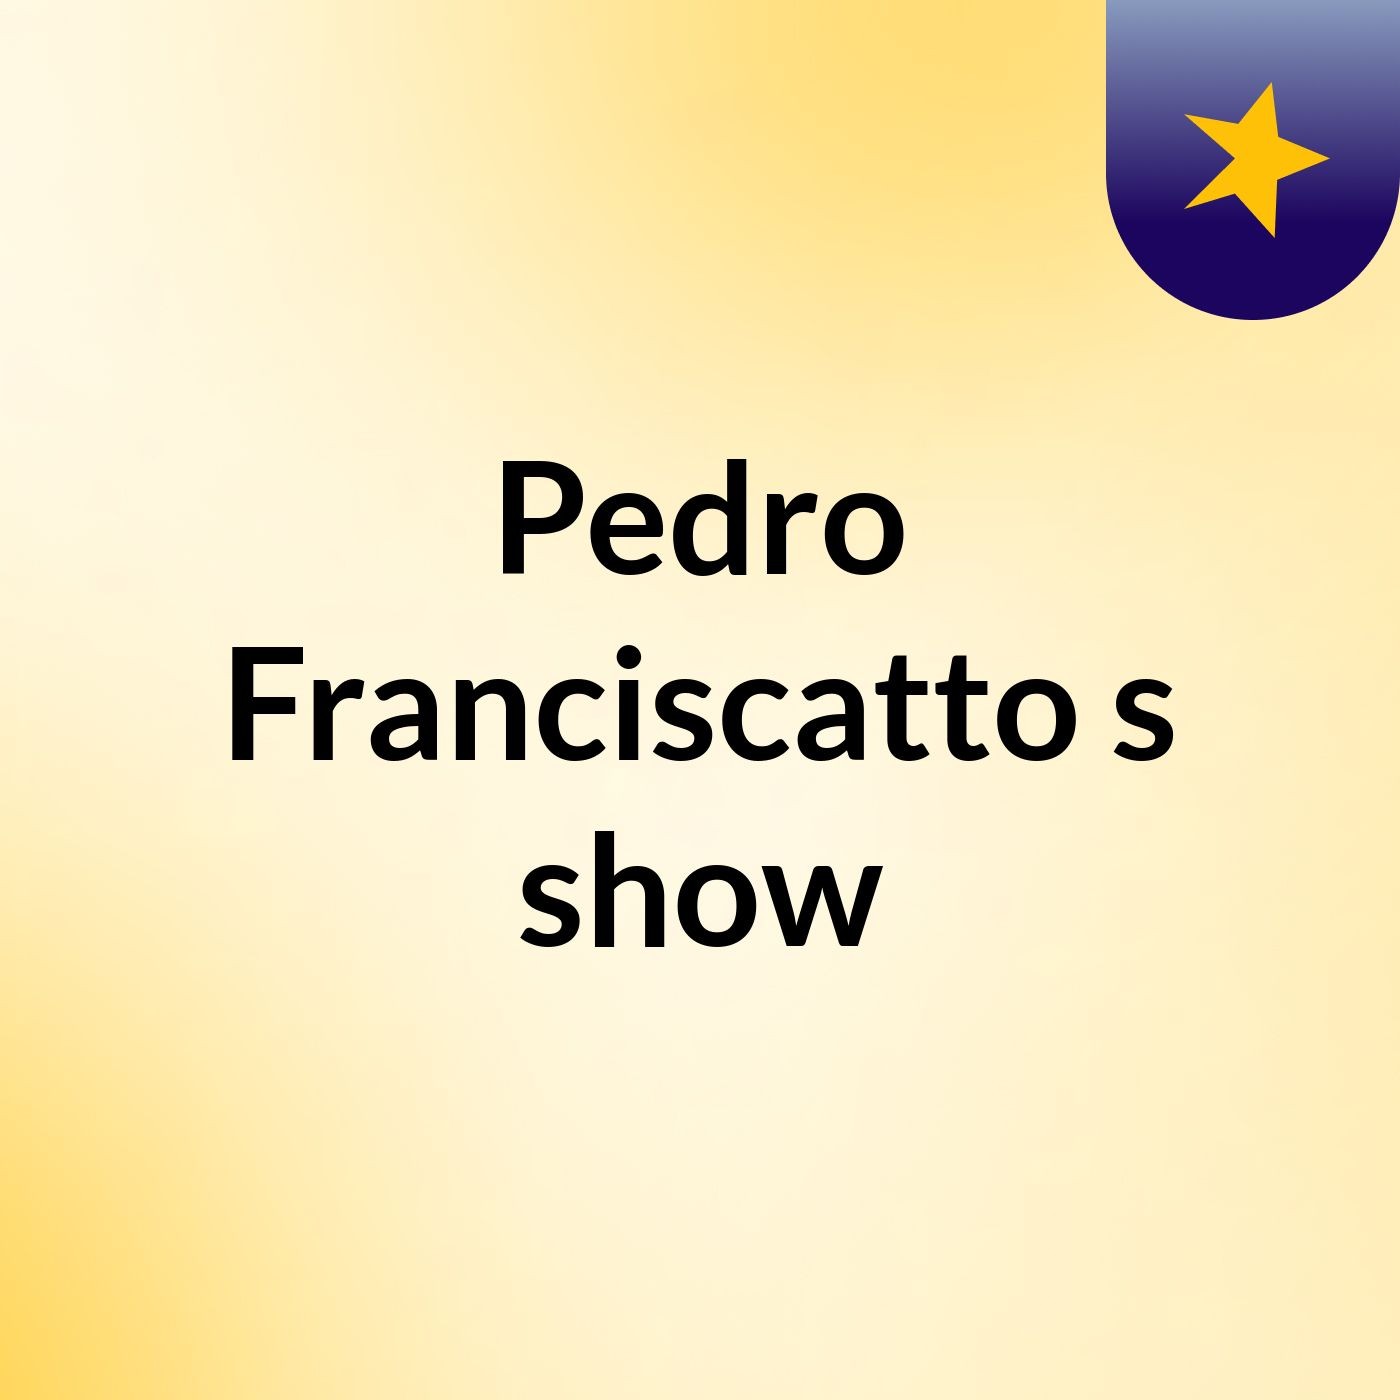 Pedro Franciscatto's show